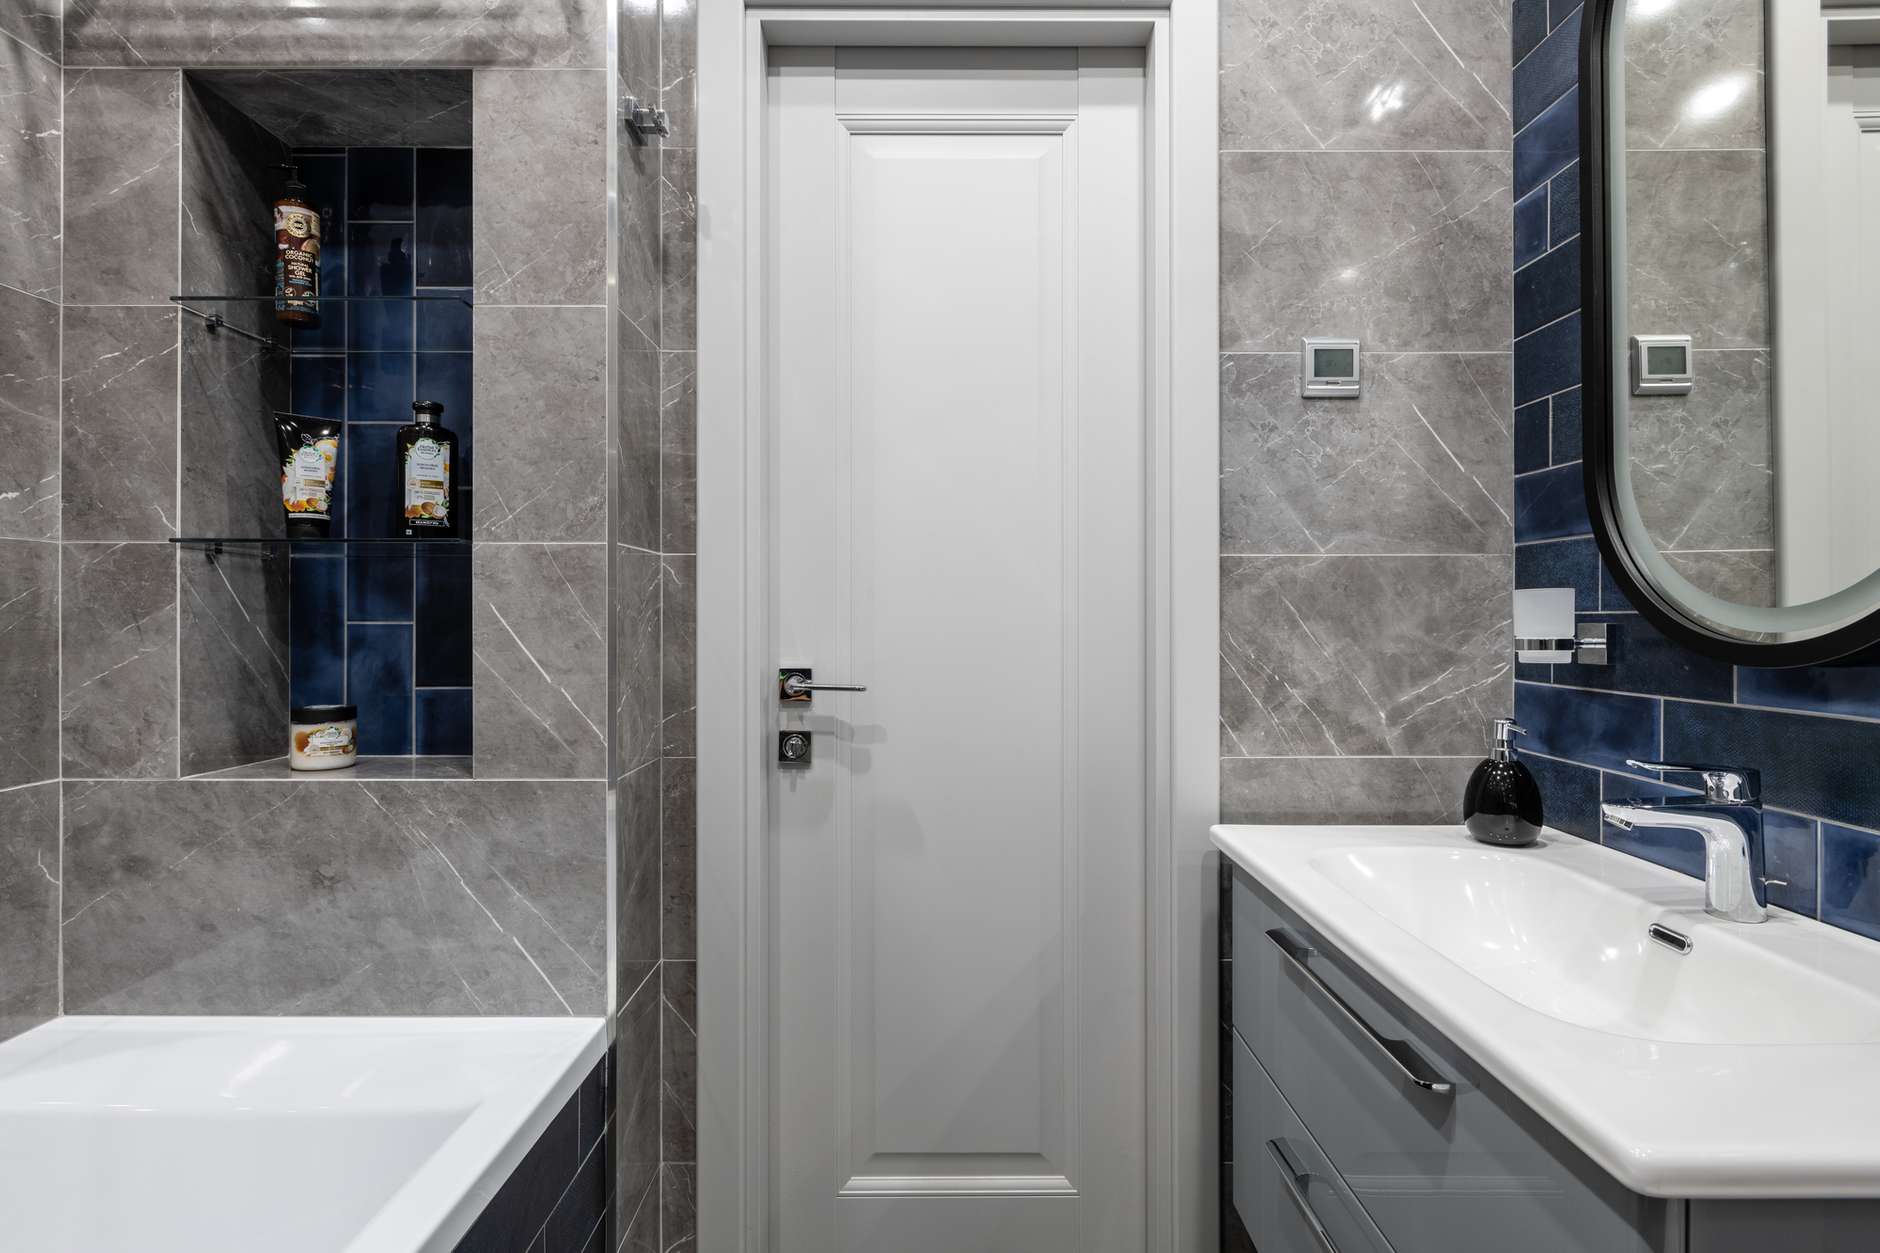 Phòng tắm là sự kết hợp giữa màu trắng thanh lịch, sắc xám sang trọng và gam màu xanh lam đậm cực kỳ thời trang và nổi bật.